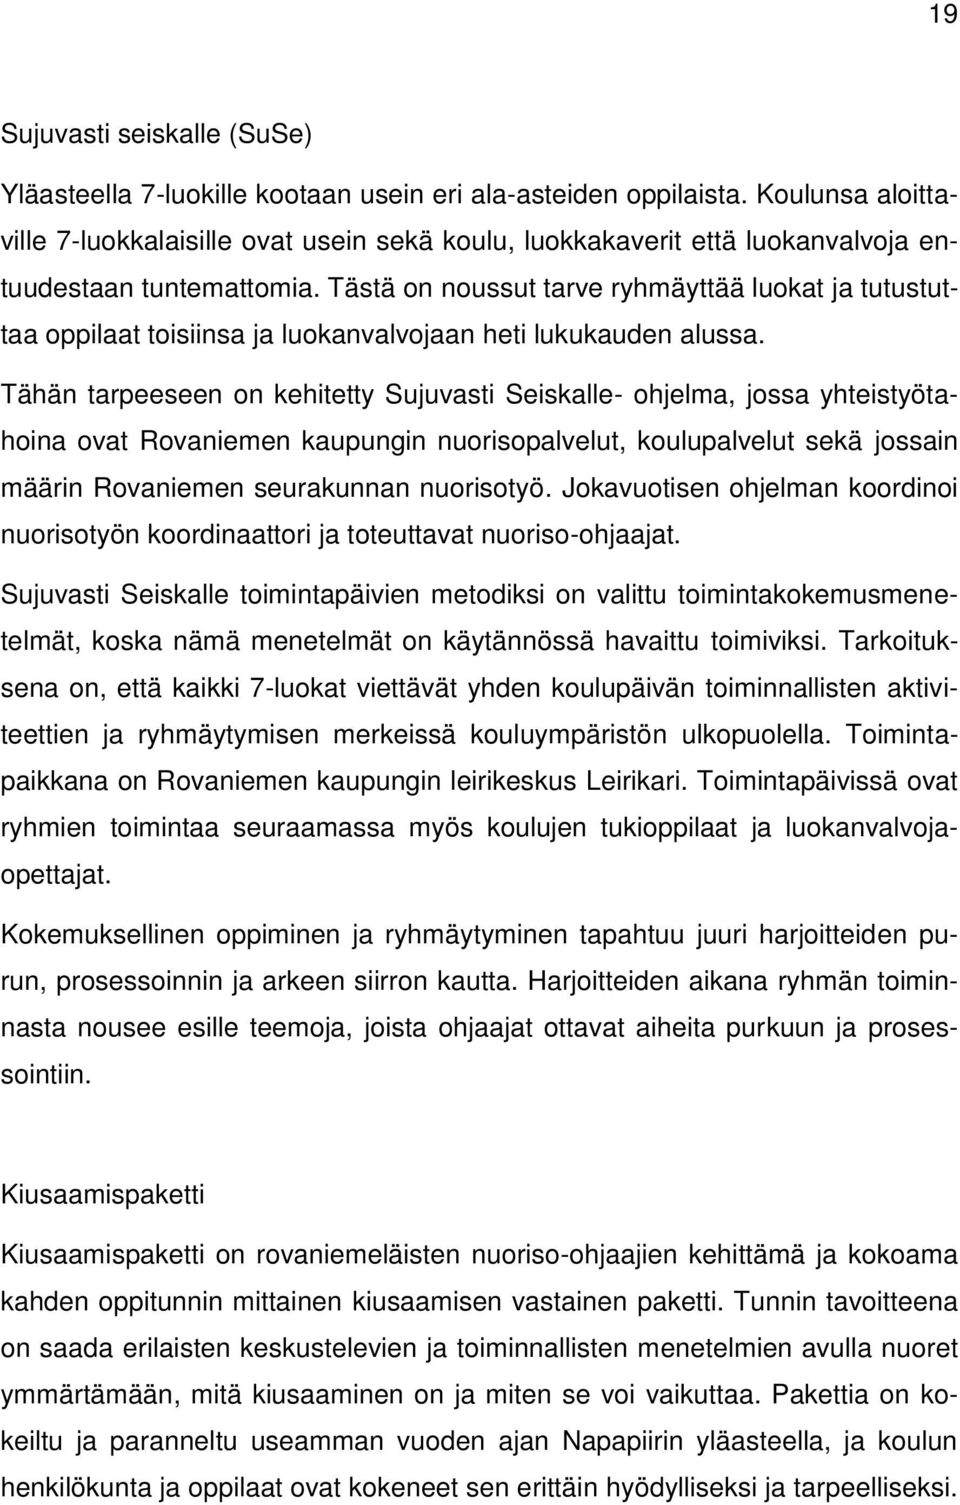 TOIMINTAMALLI. Koulunuorisotyö Rovaniemellä - PDF Ilmainen lataus